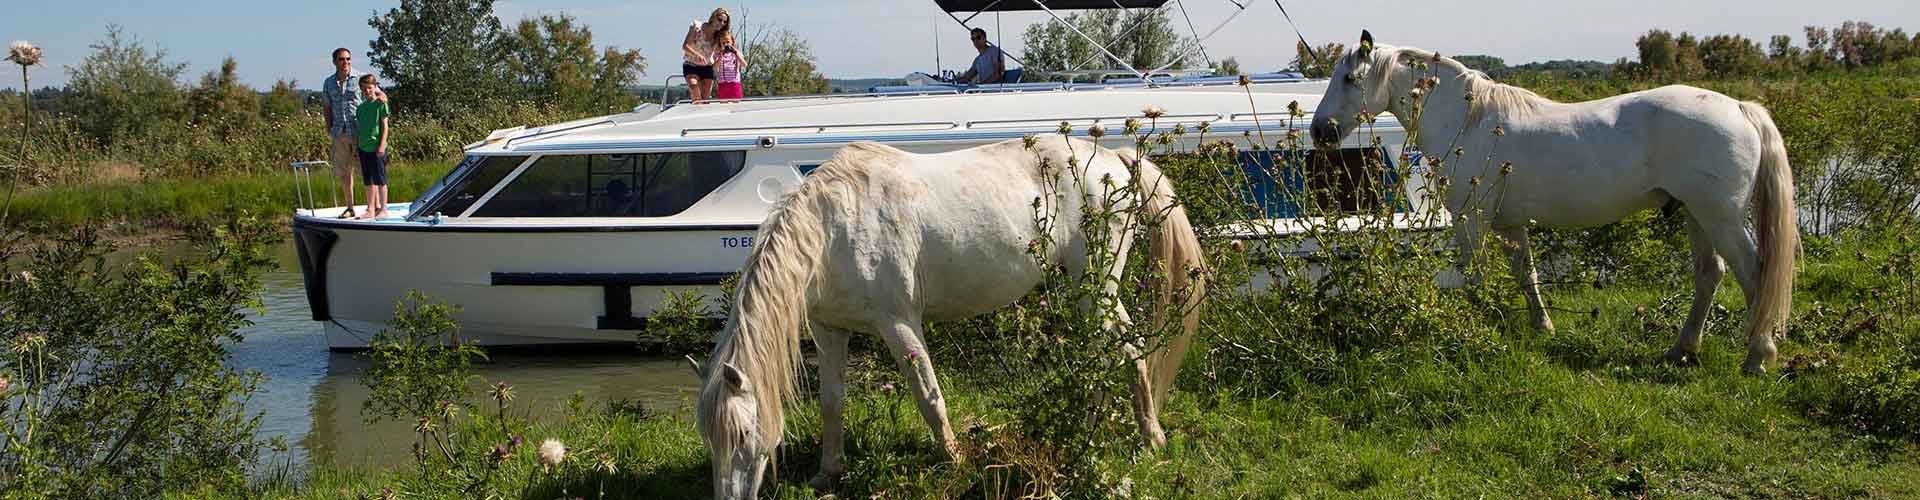 Vacances en bateau pour les amateurs d'équitation